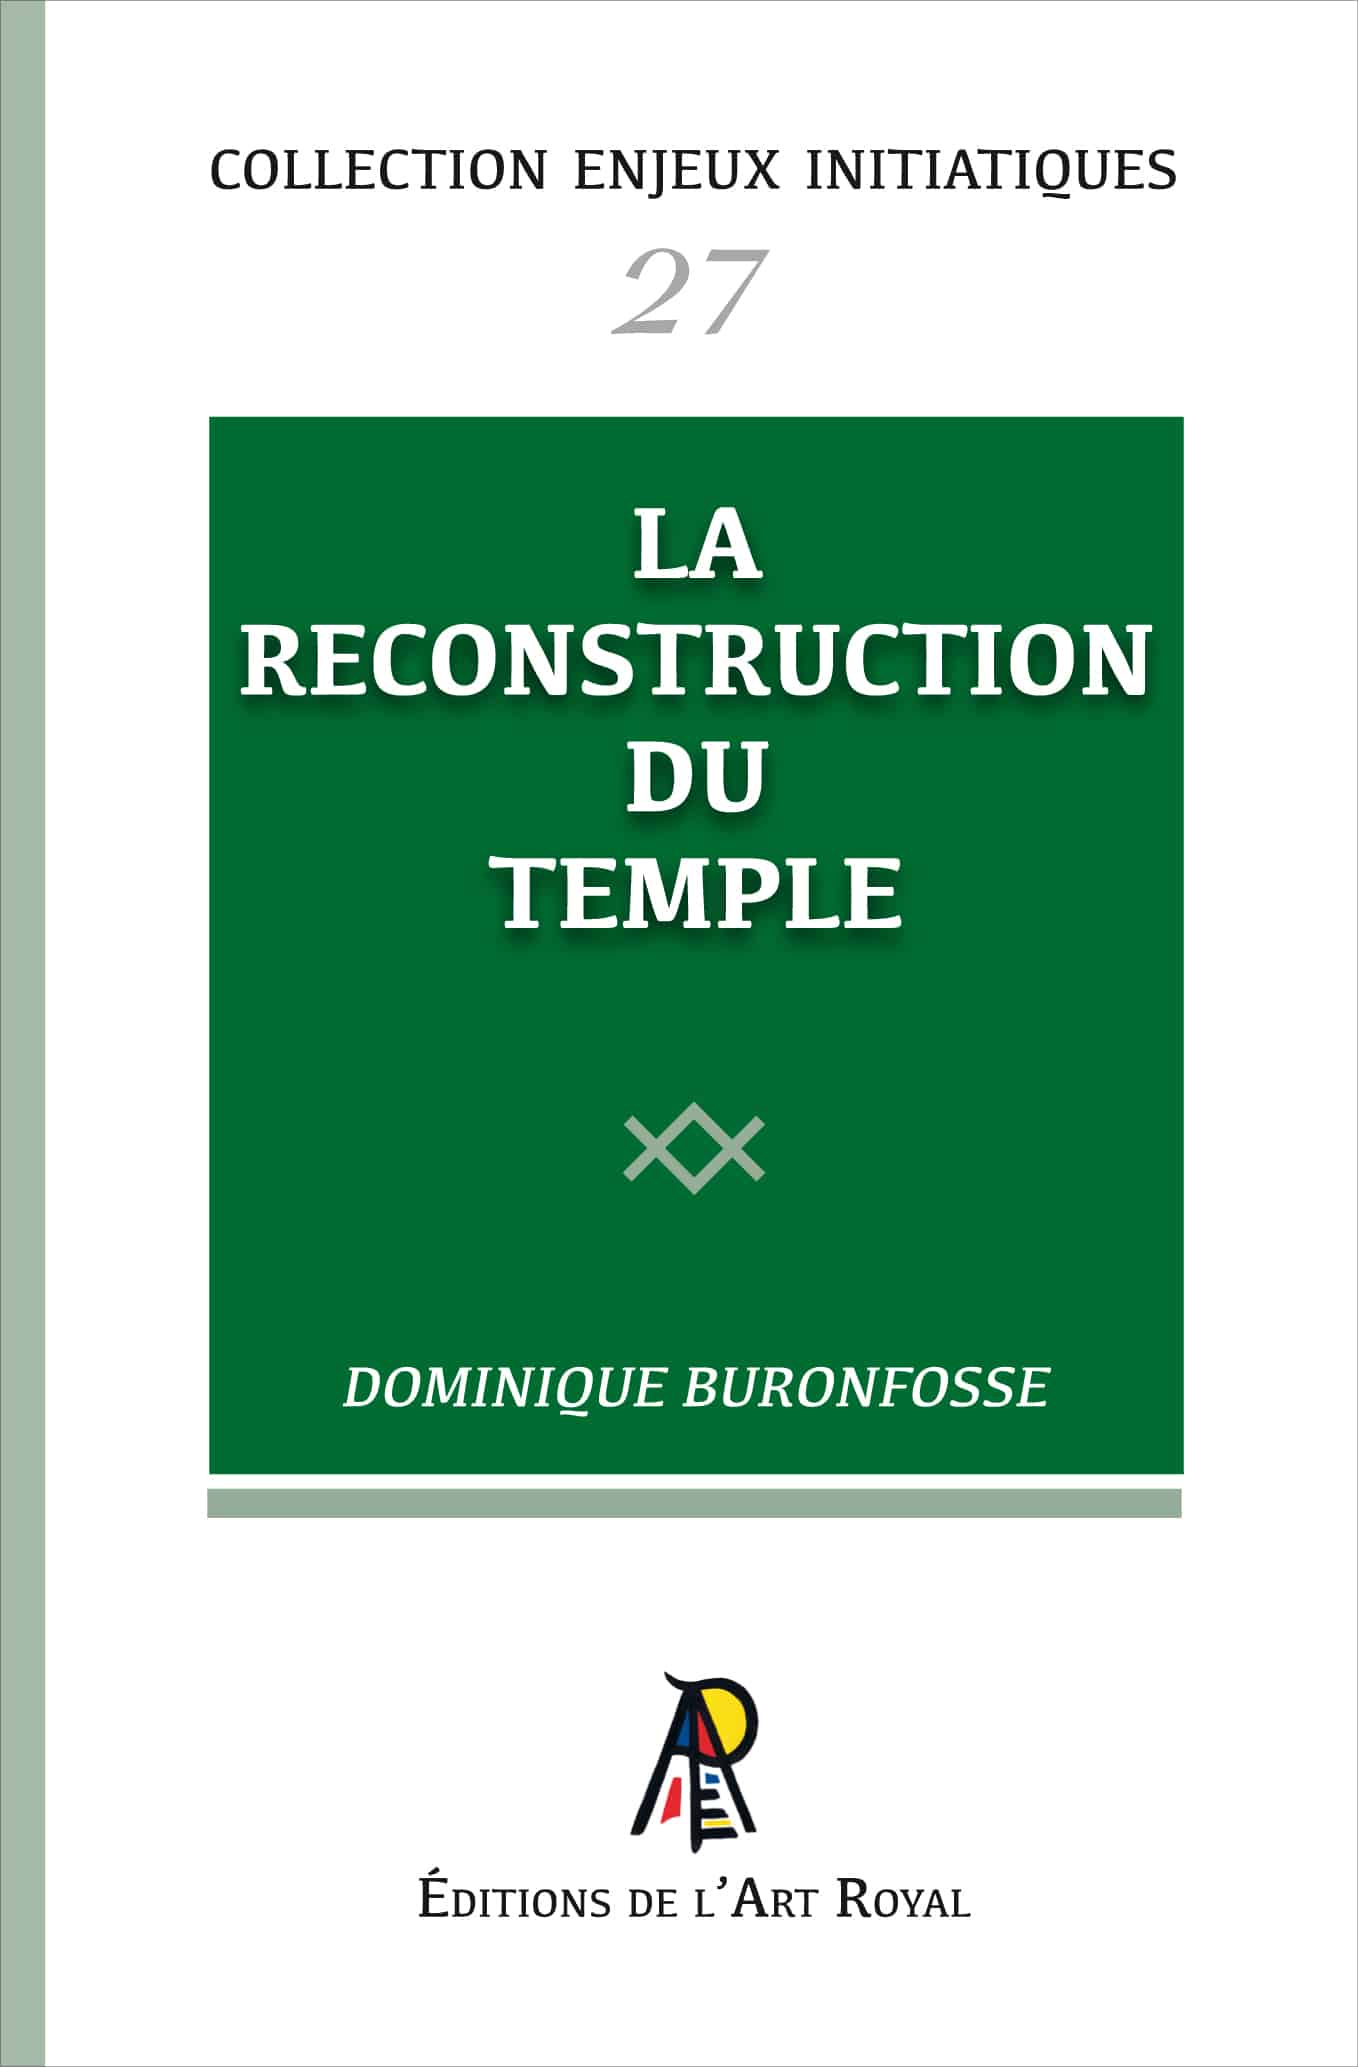 La Reconstruction du Temple, Dominique Buronfosse